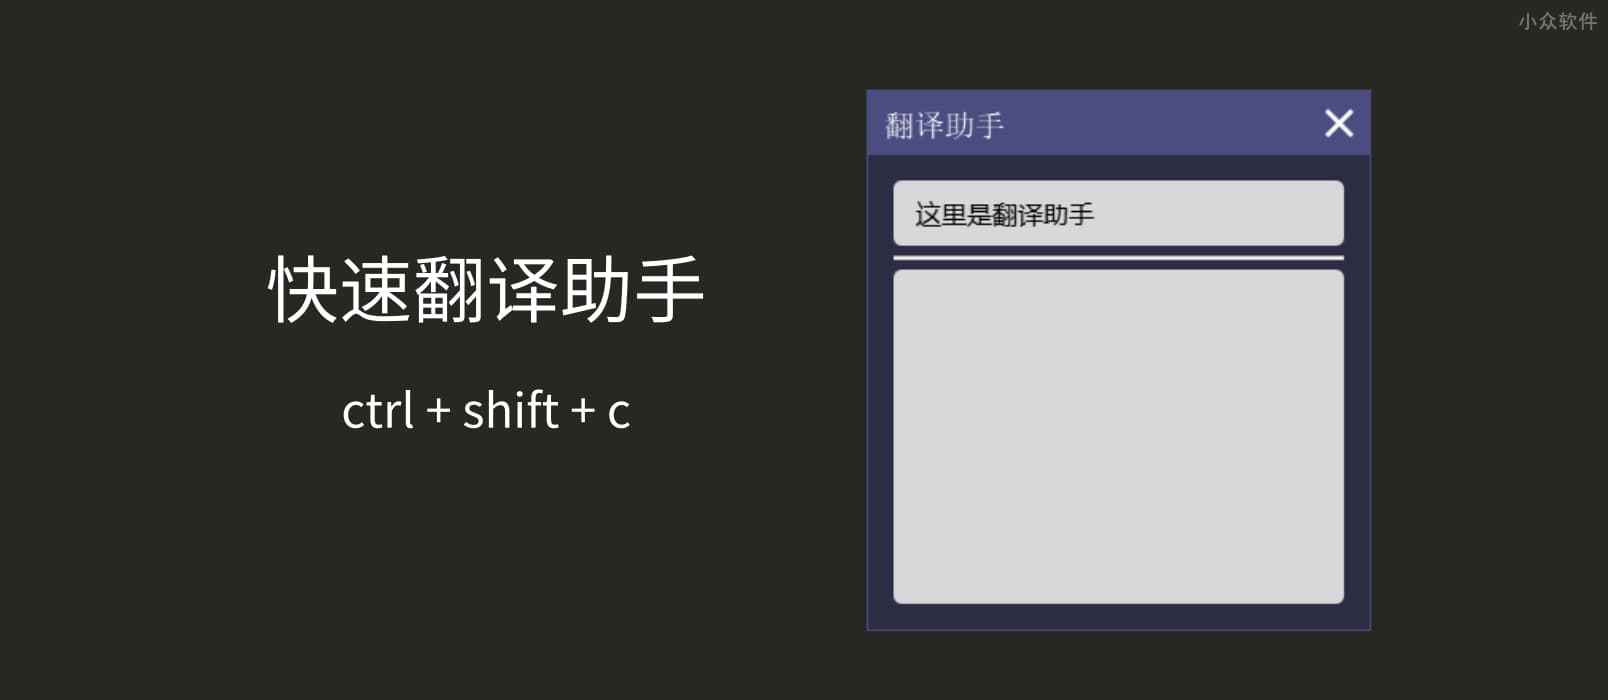 小风翻译助手 - 英中互译，快速翻译工具[Windows] 1